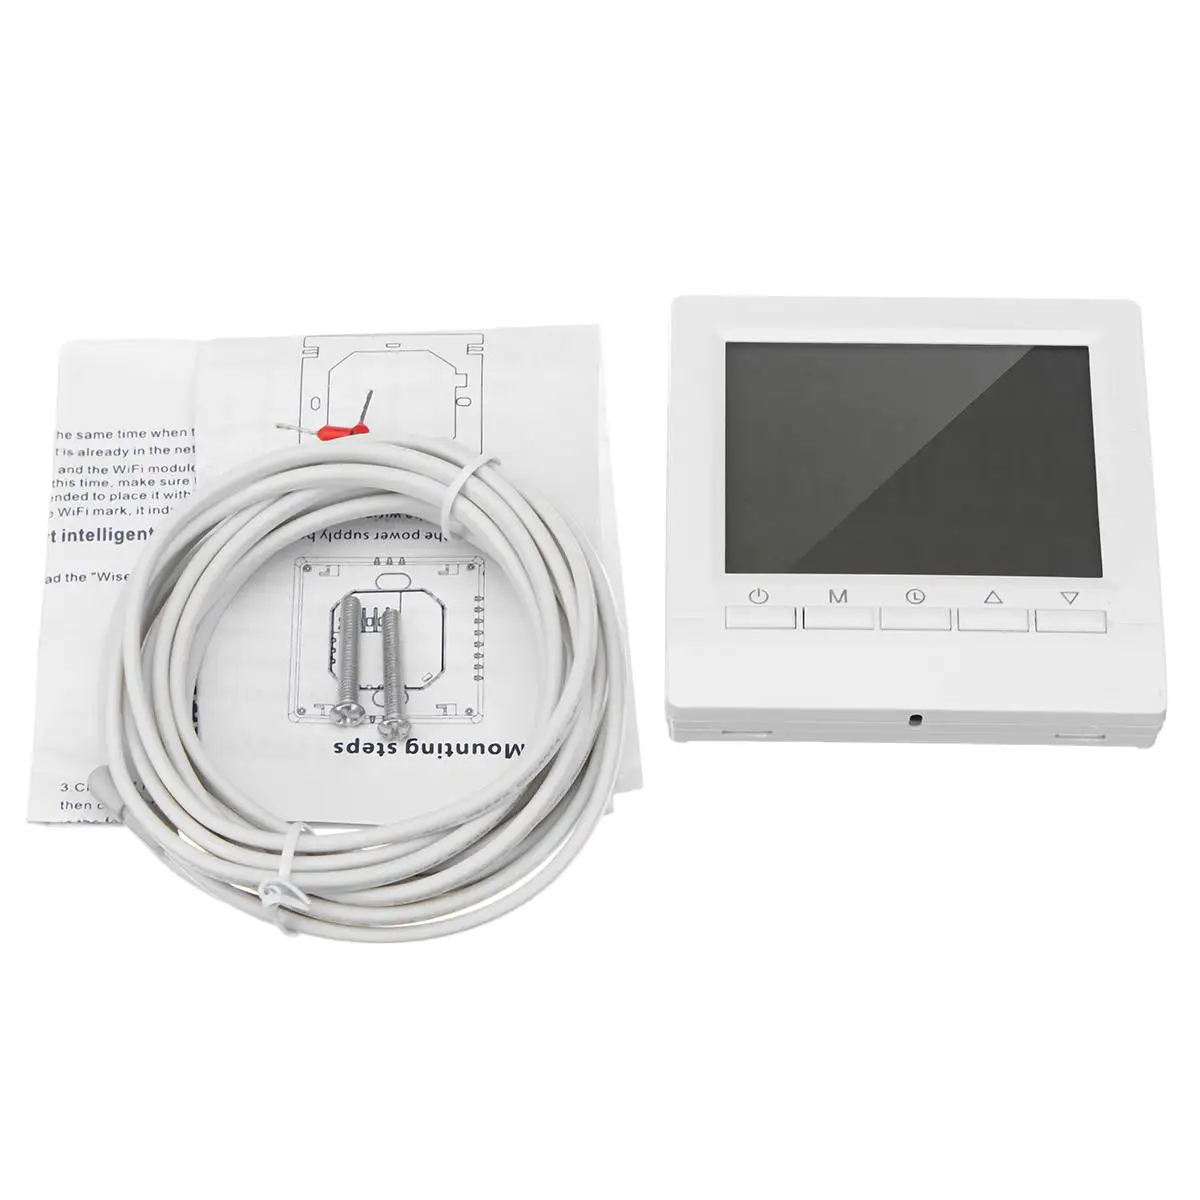 AC 220V Умный Цифровой Wi-Fi контроллер температуры нагрева воды сенсорный экран светодиодный дисплей комнатный термостат контроллер регулятор - Цвет: Белый